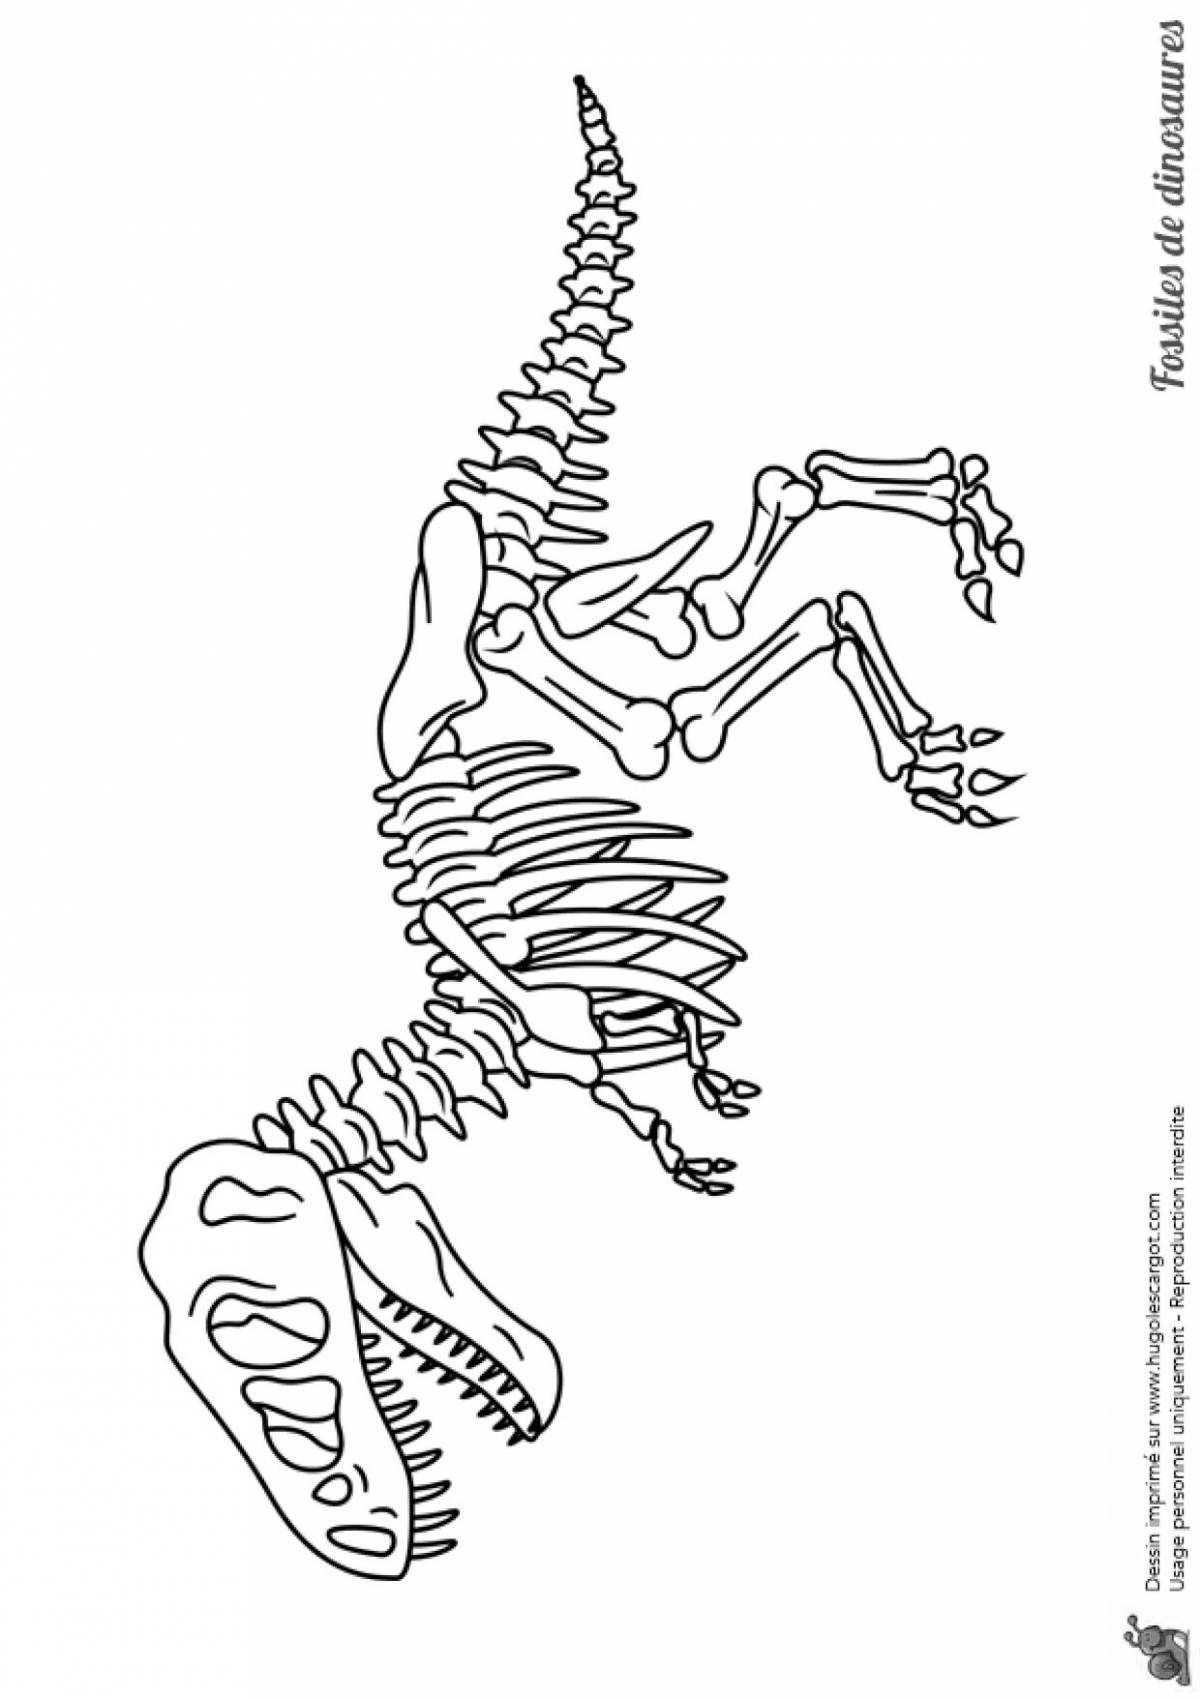 Поразительная страница раскраски скелета